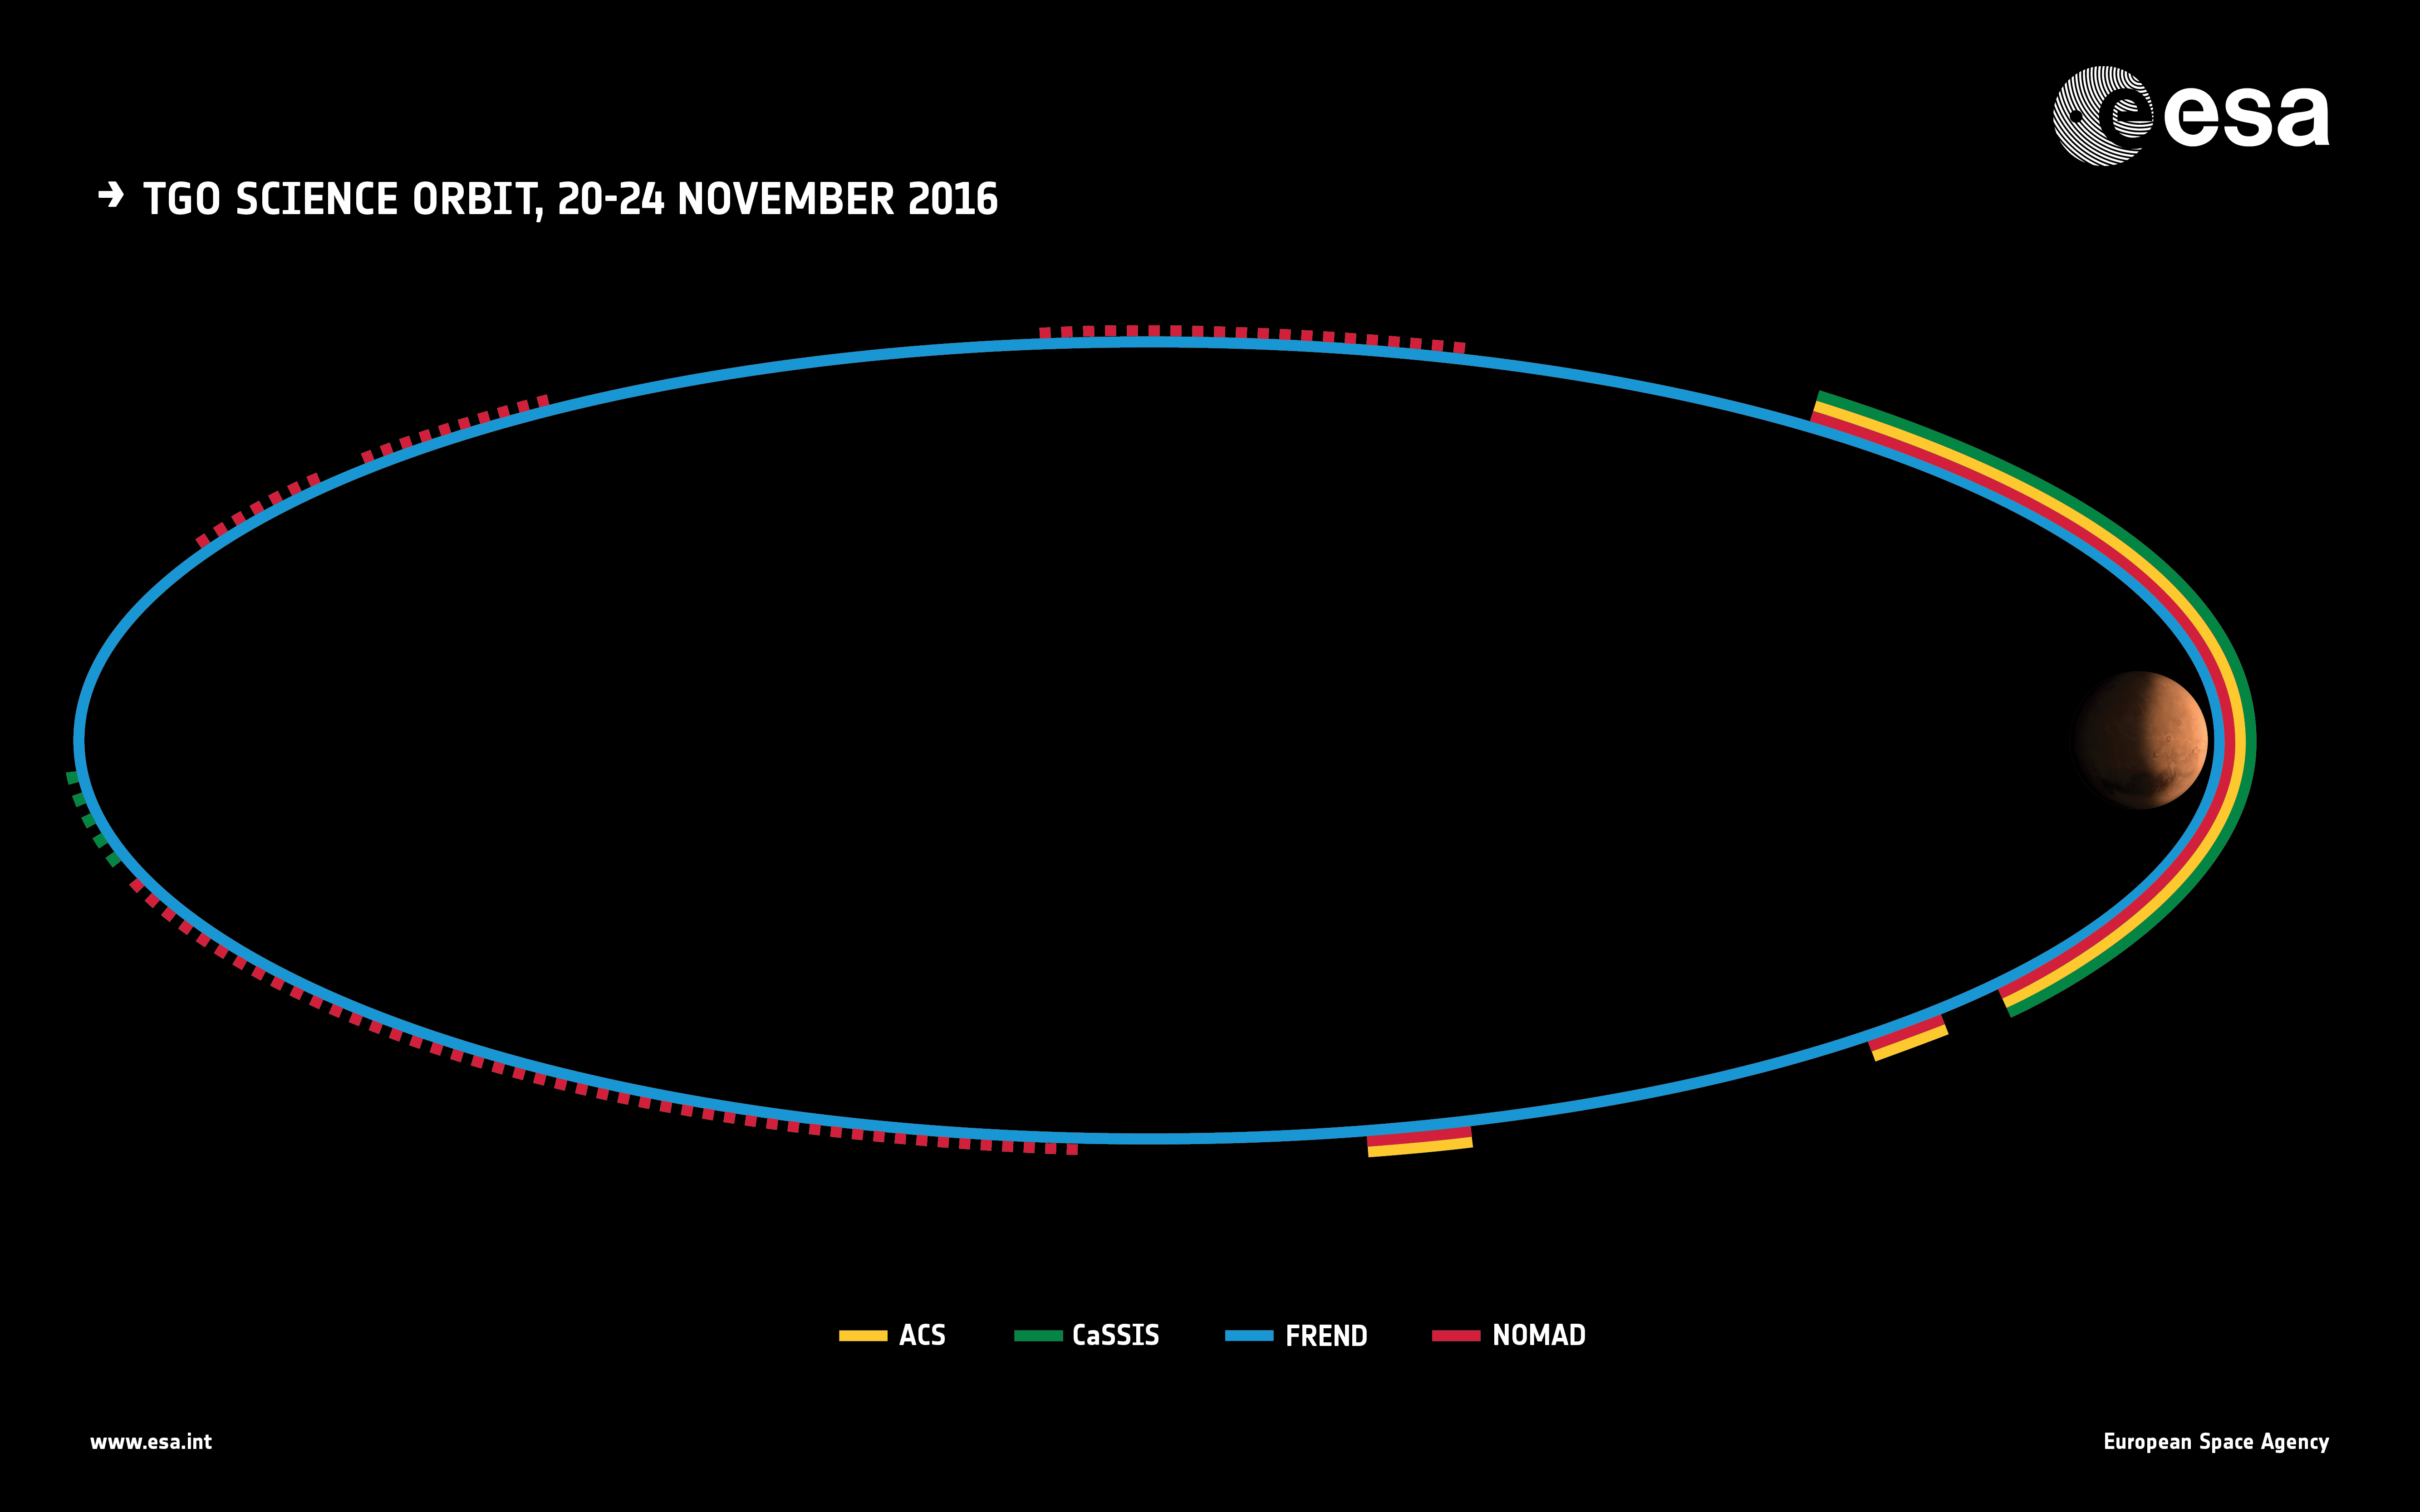 L'orbita scientifica di TGO tra il 20 e il 24 novembre 2016. Credit: ESA